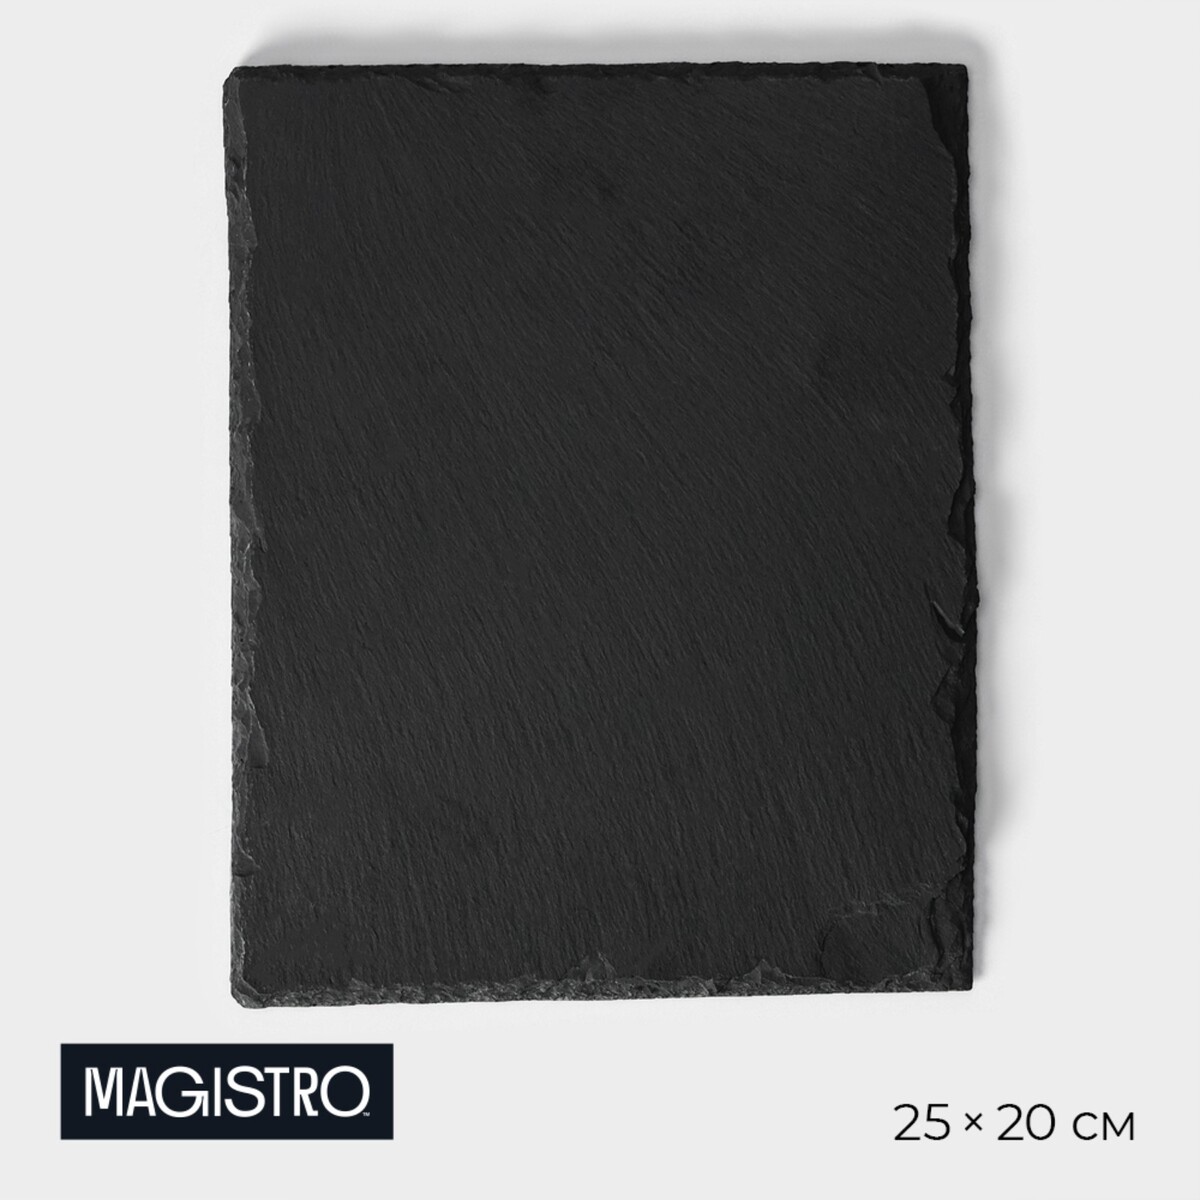 Доска для подачи из сланца magistro valley, 25×20 см доска для подачи из сланца